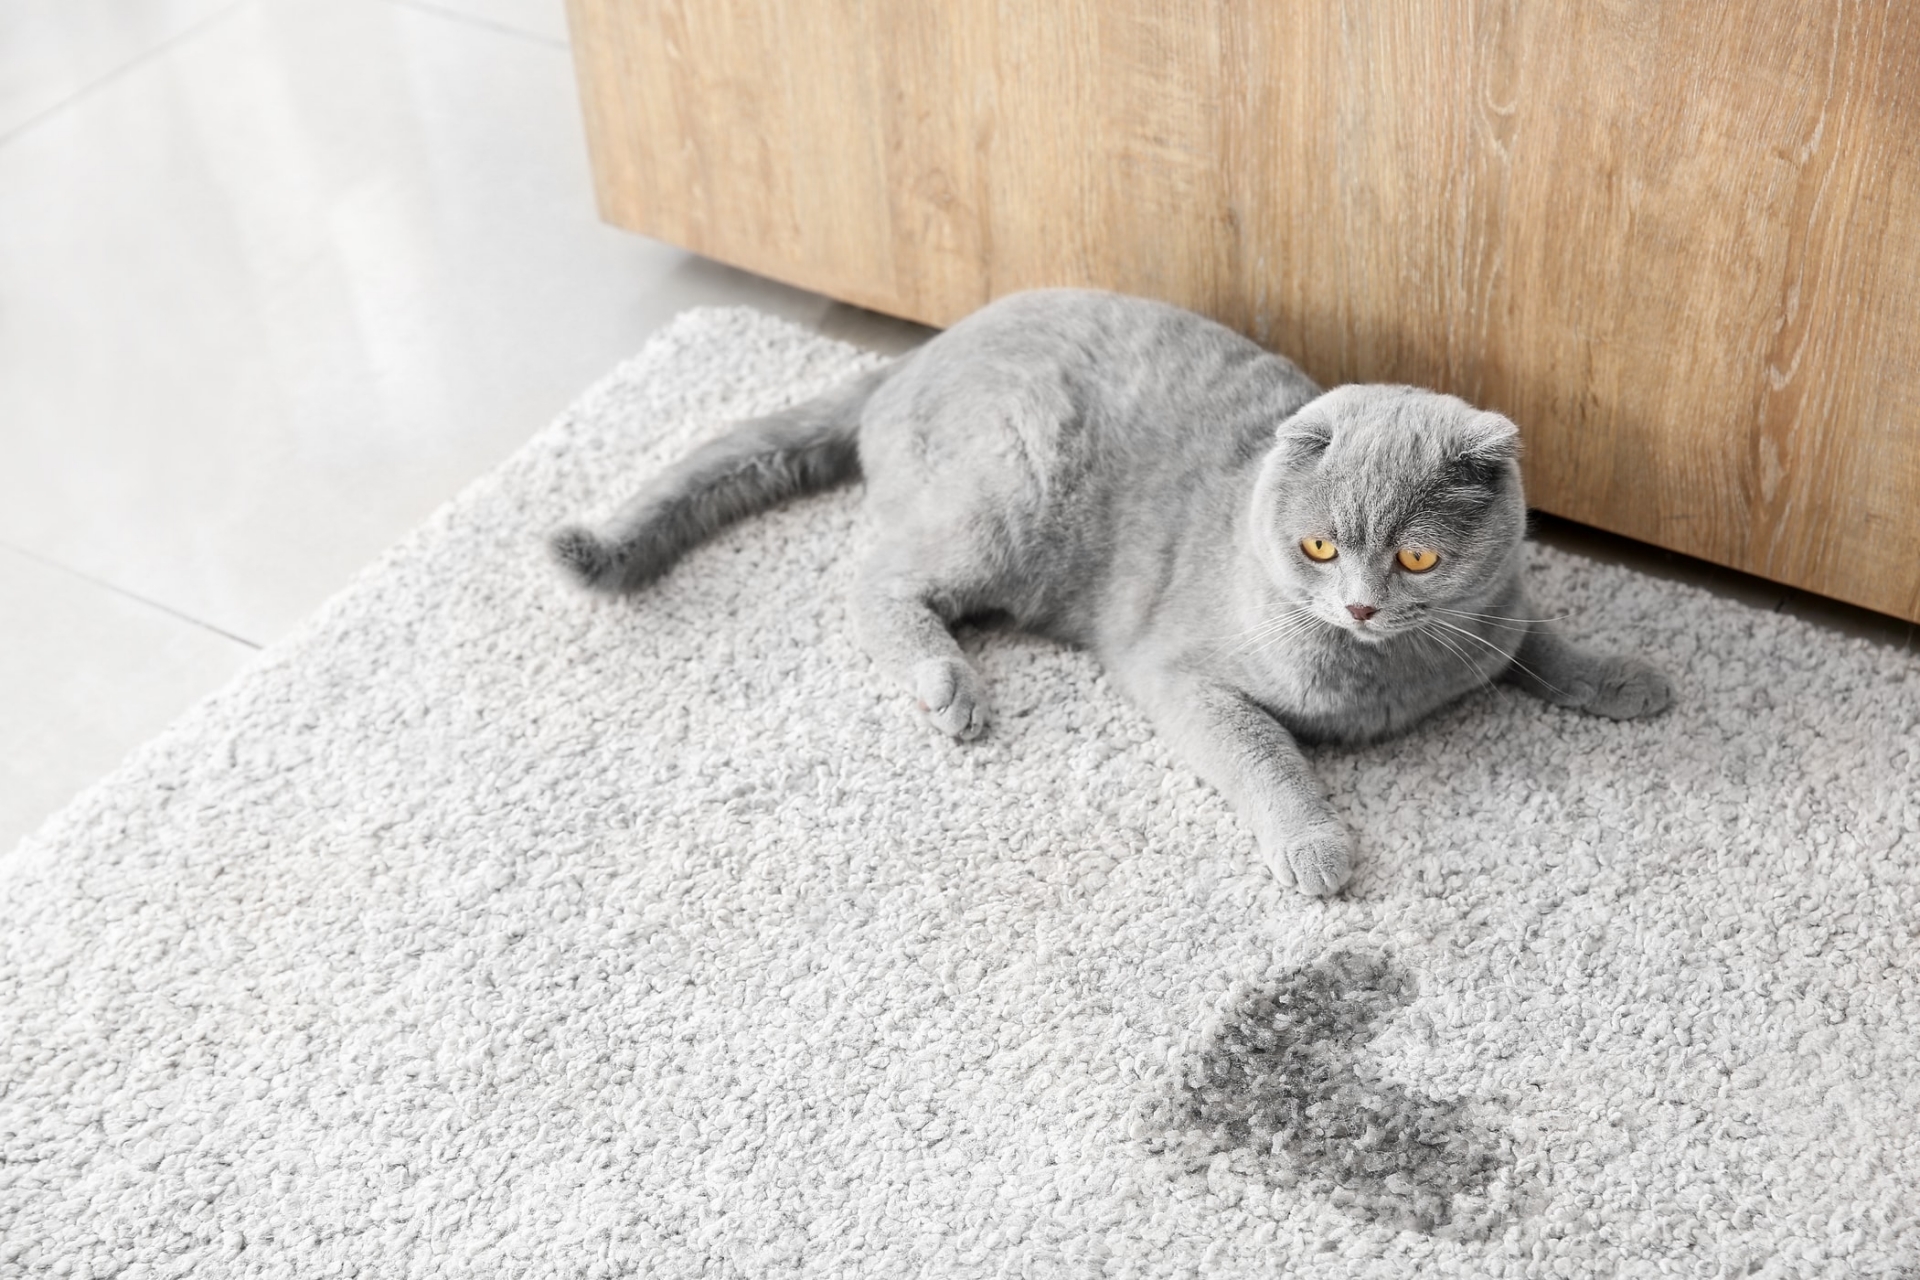 Khi tè ra ngoài khay cát, mèo muốn báo hiệu cho bạn biết các vấn đề khó chịu đang xảy ra với nó.